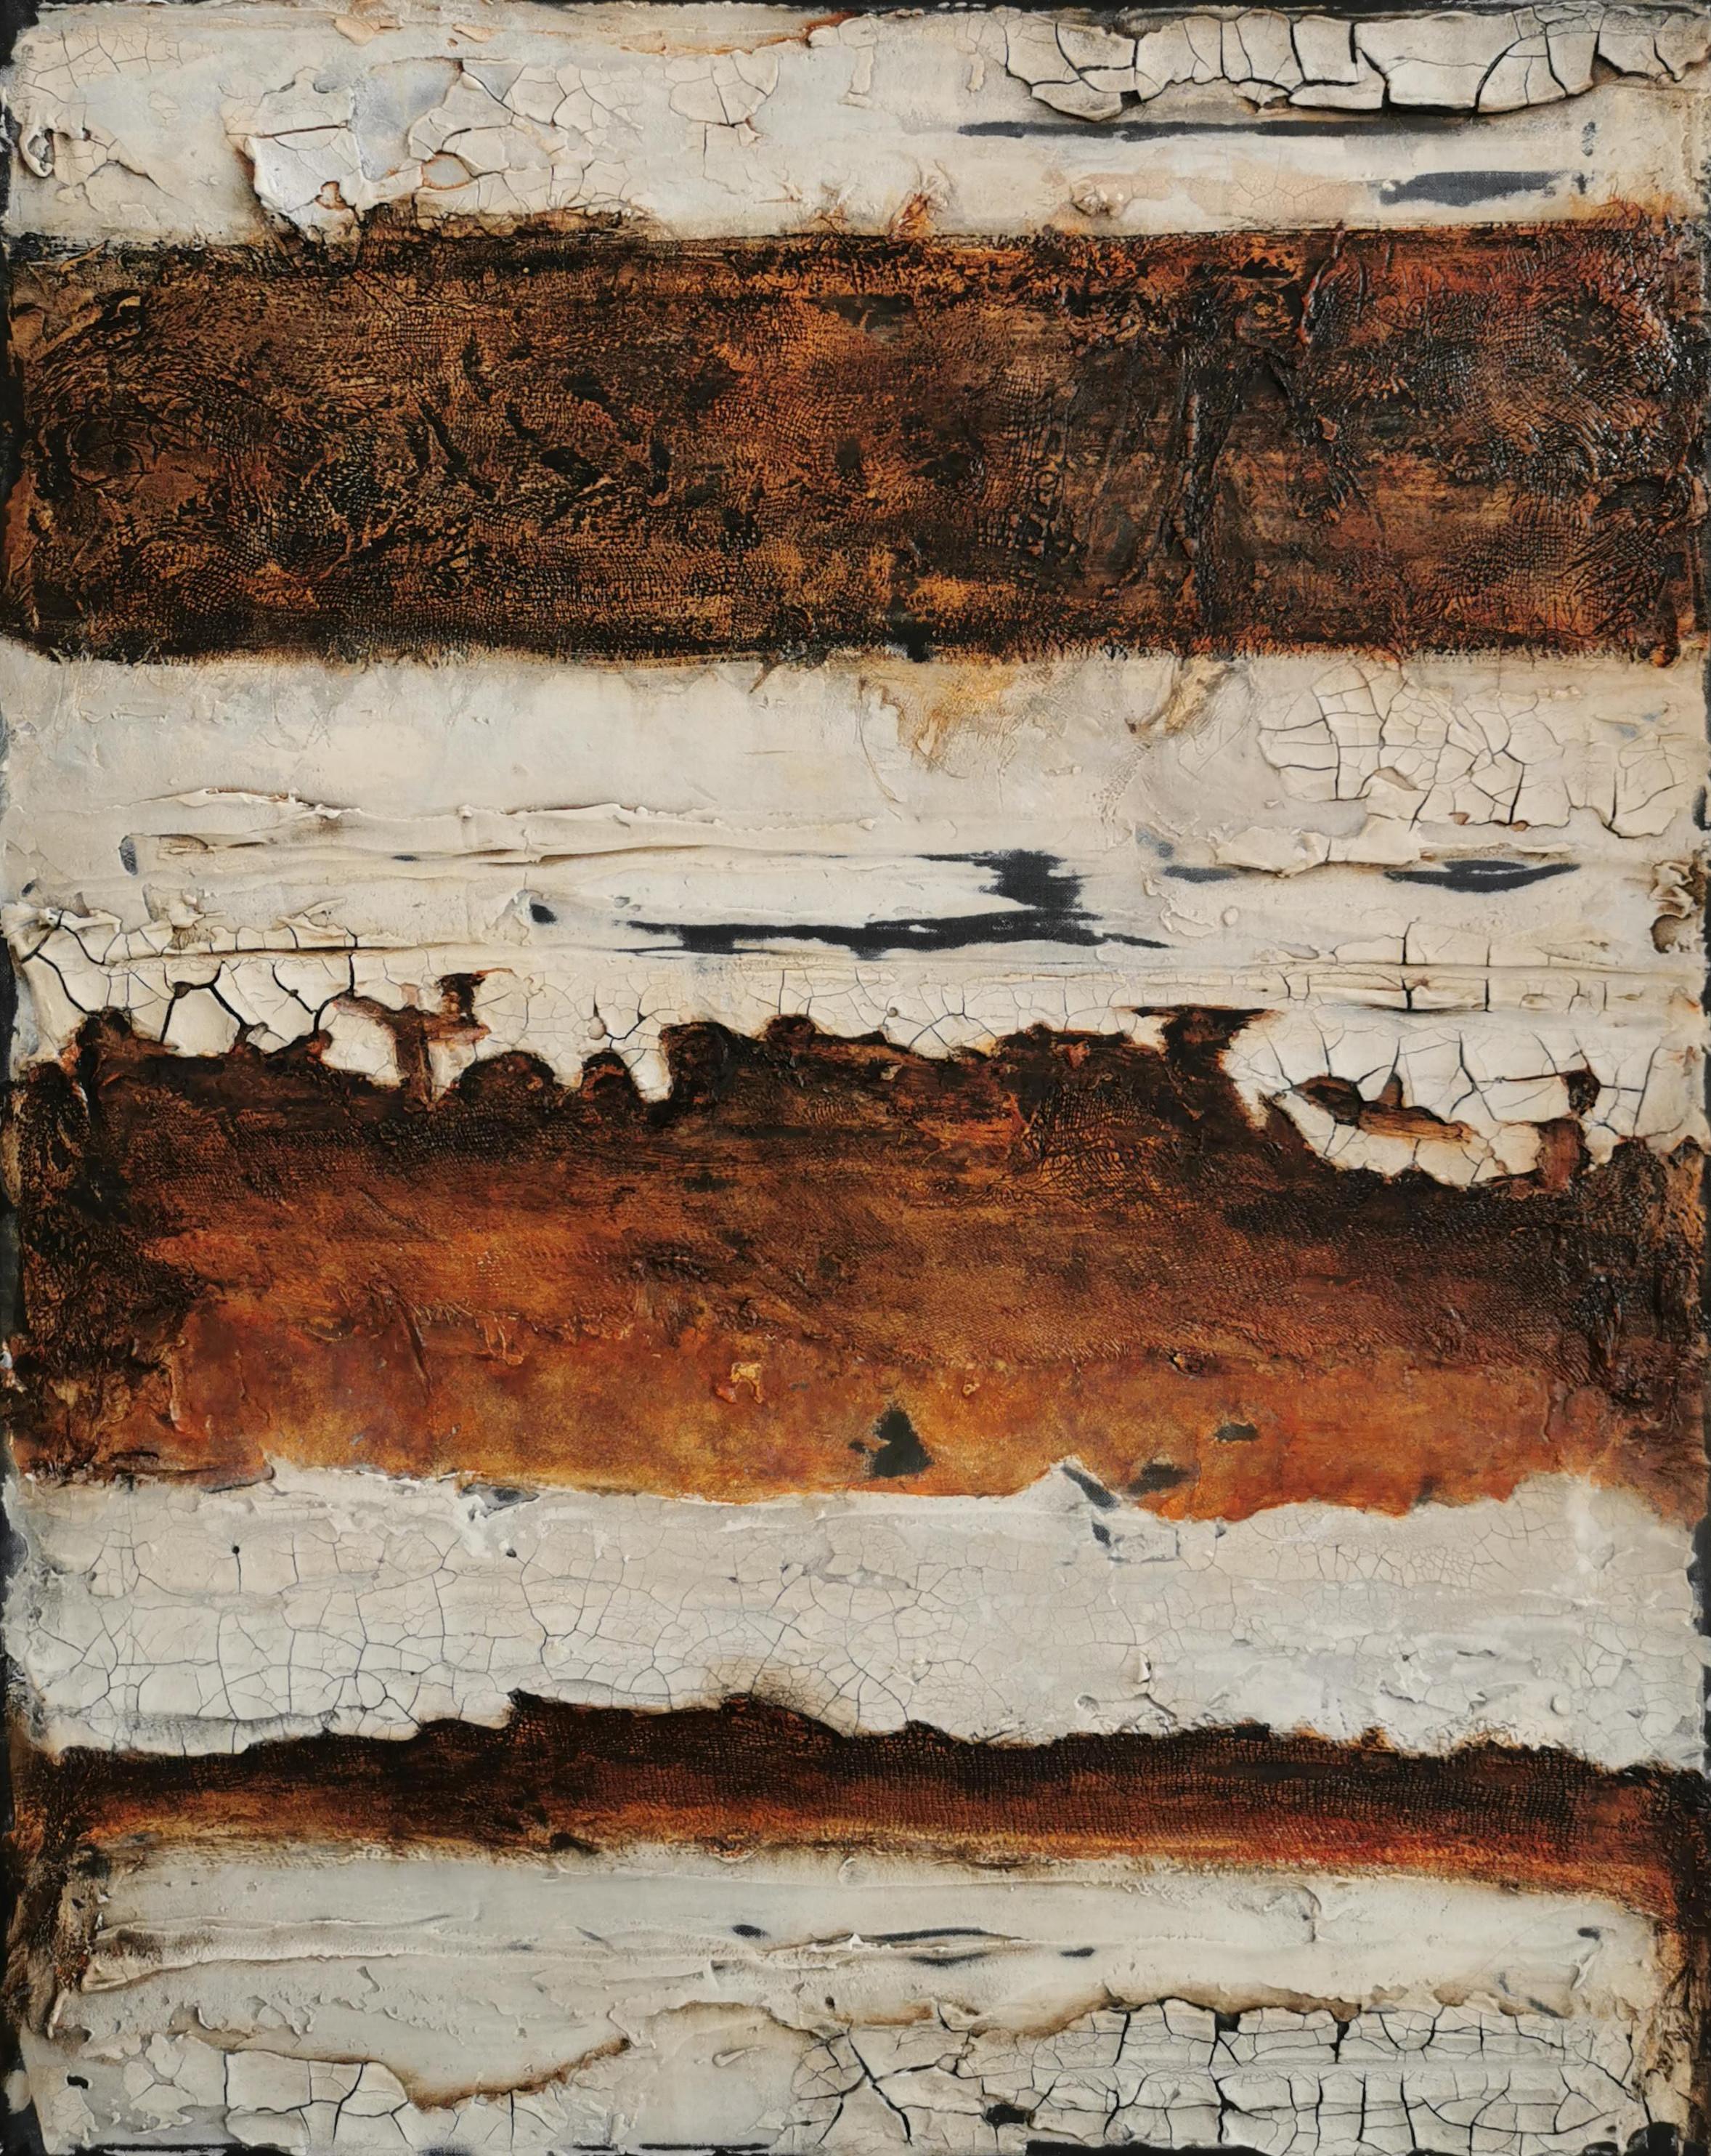 Abstract Painting Shelly Cook - Profondeurs cachées : Peinture abstraite contemporaine en techniques mixtes